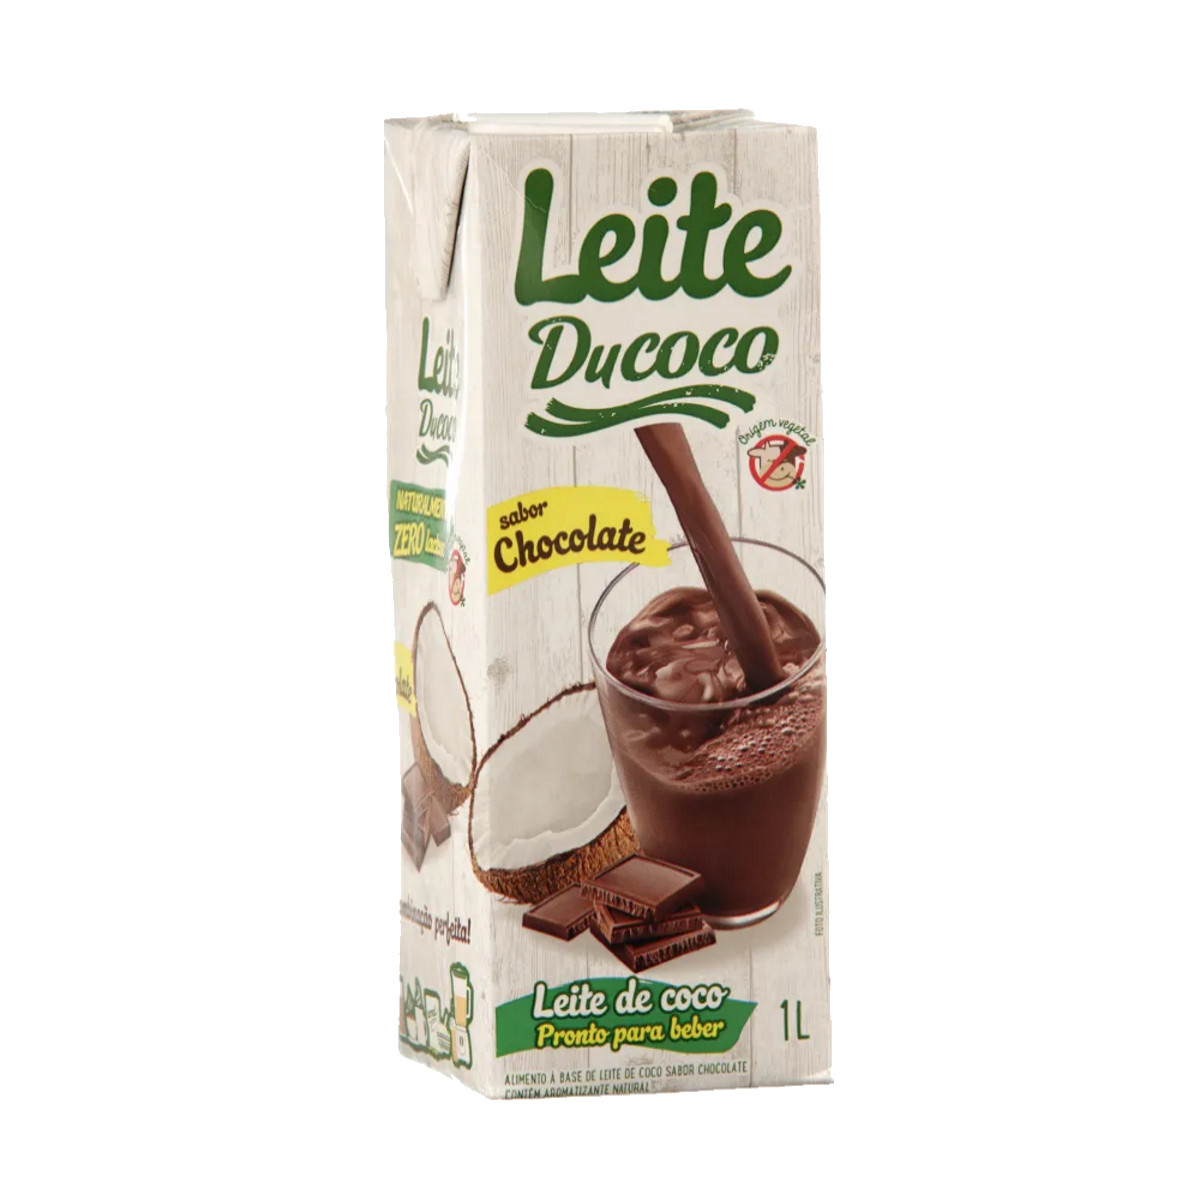 7896016604713 - ALIMENTO LEITE DE COCO DUCOCO 1L CHOCOLATE